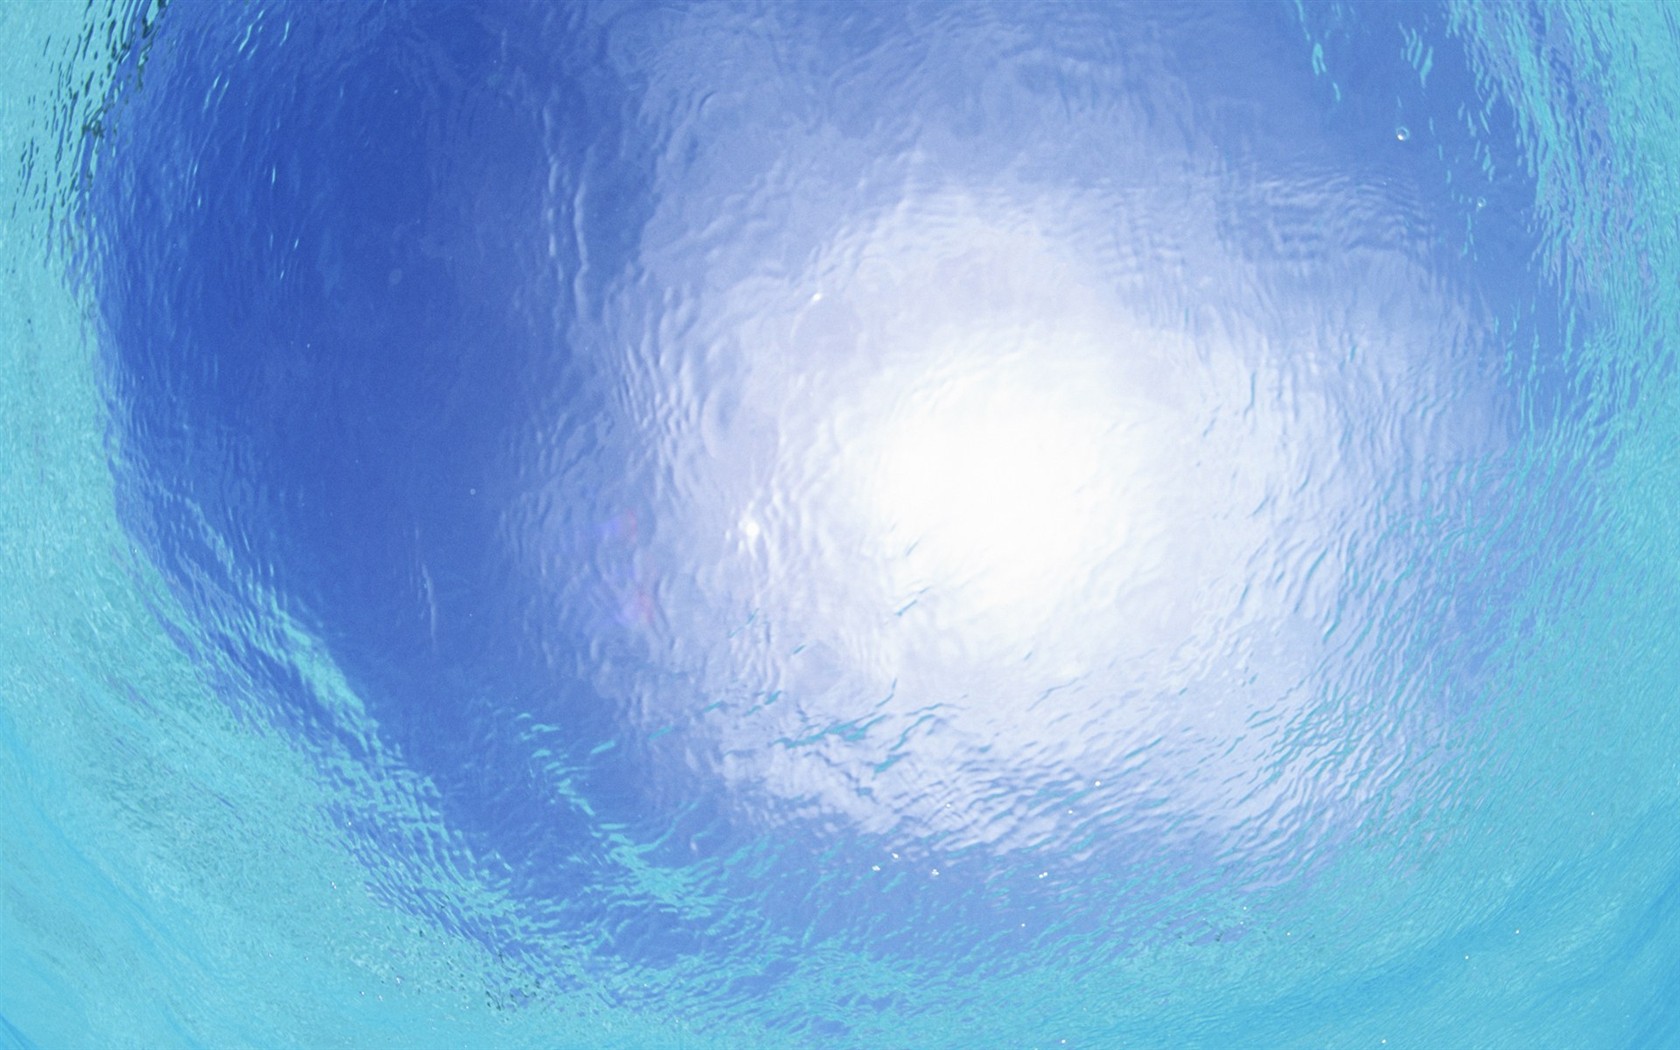 Maledivy vody a modrou oblohu #16 - 1680x1050